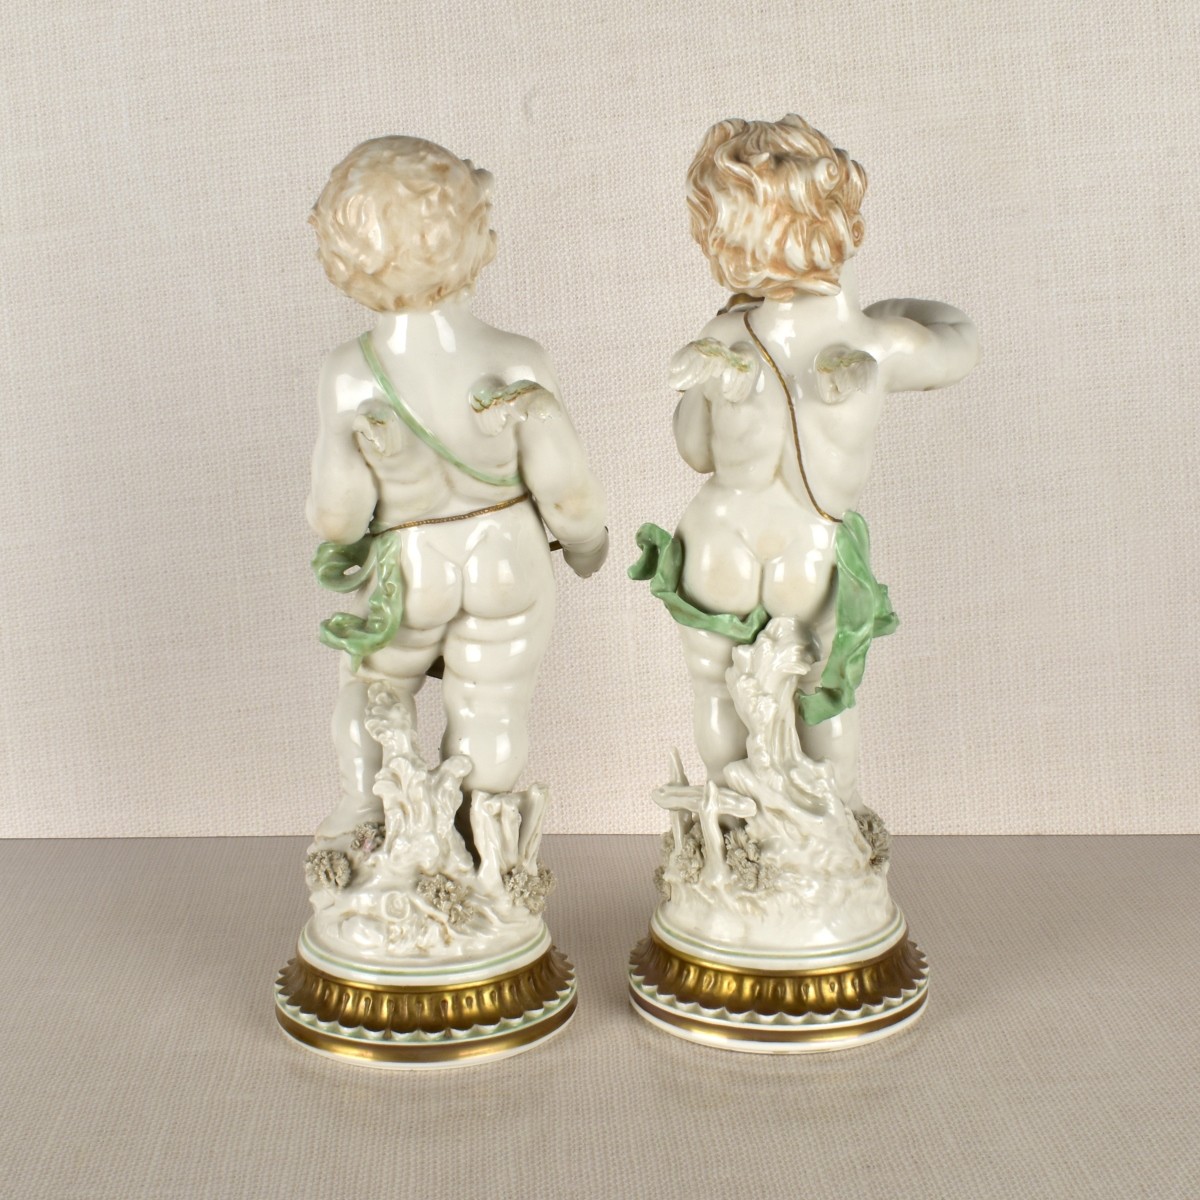 Allegorical Porcelain Figures